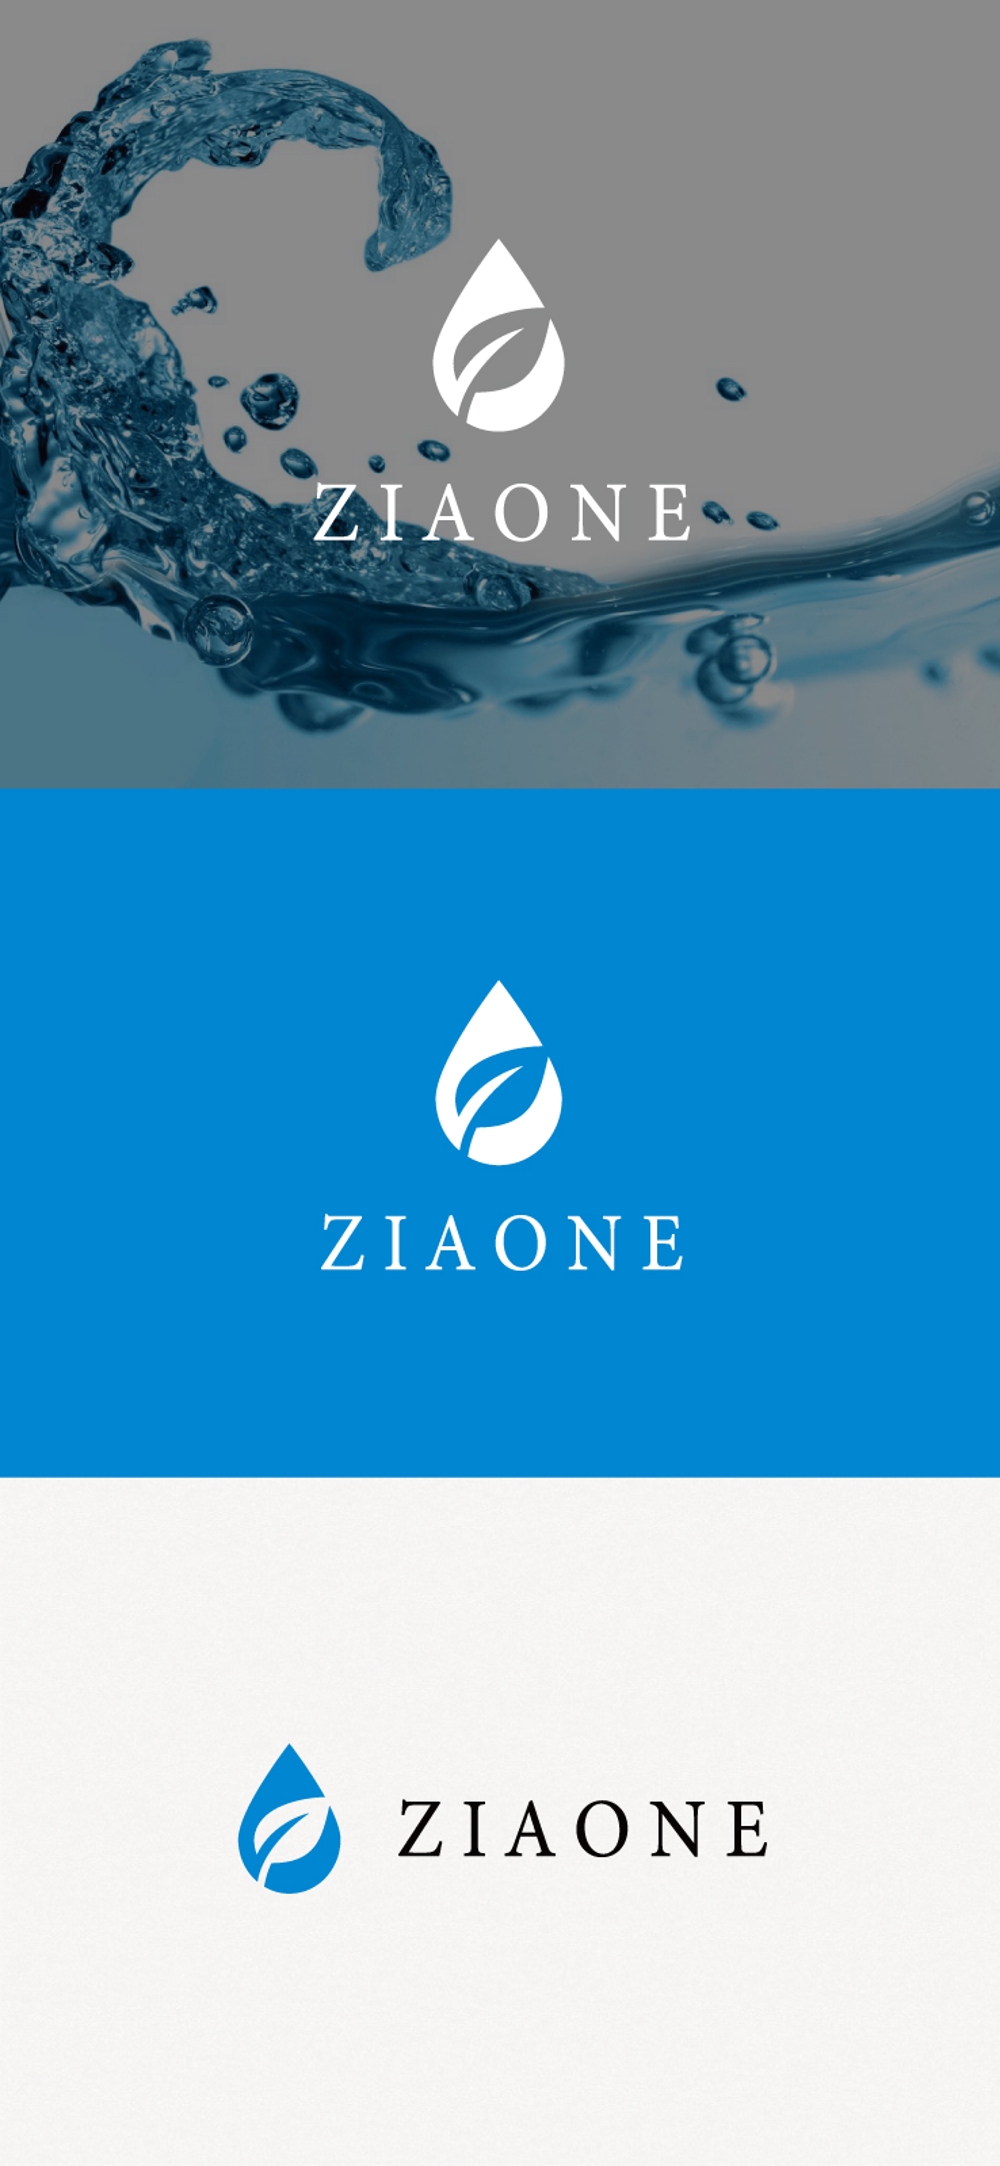 次亜塩素酸水を販売するためのロゴデザインをお願い致します。